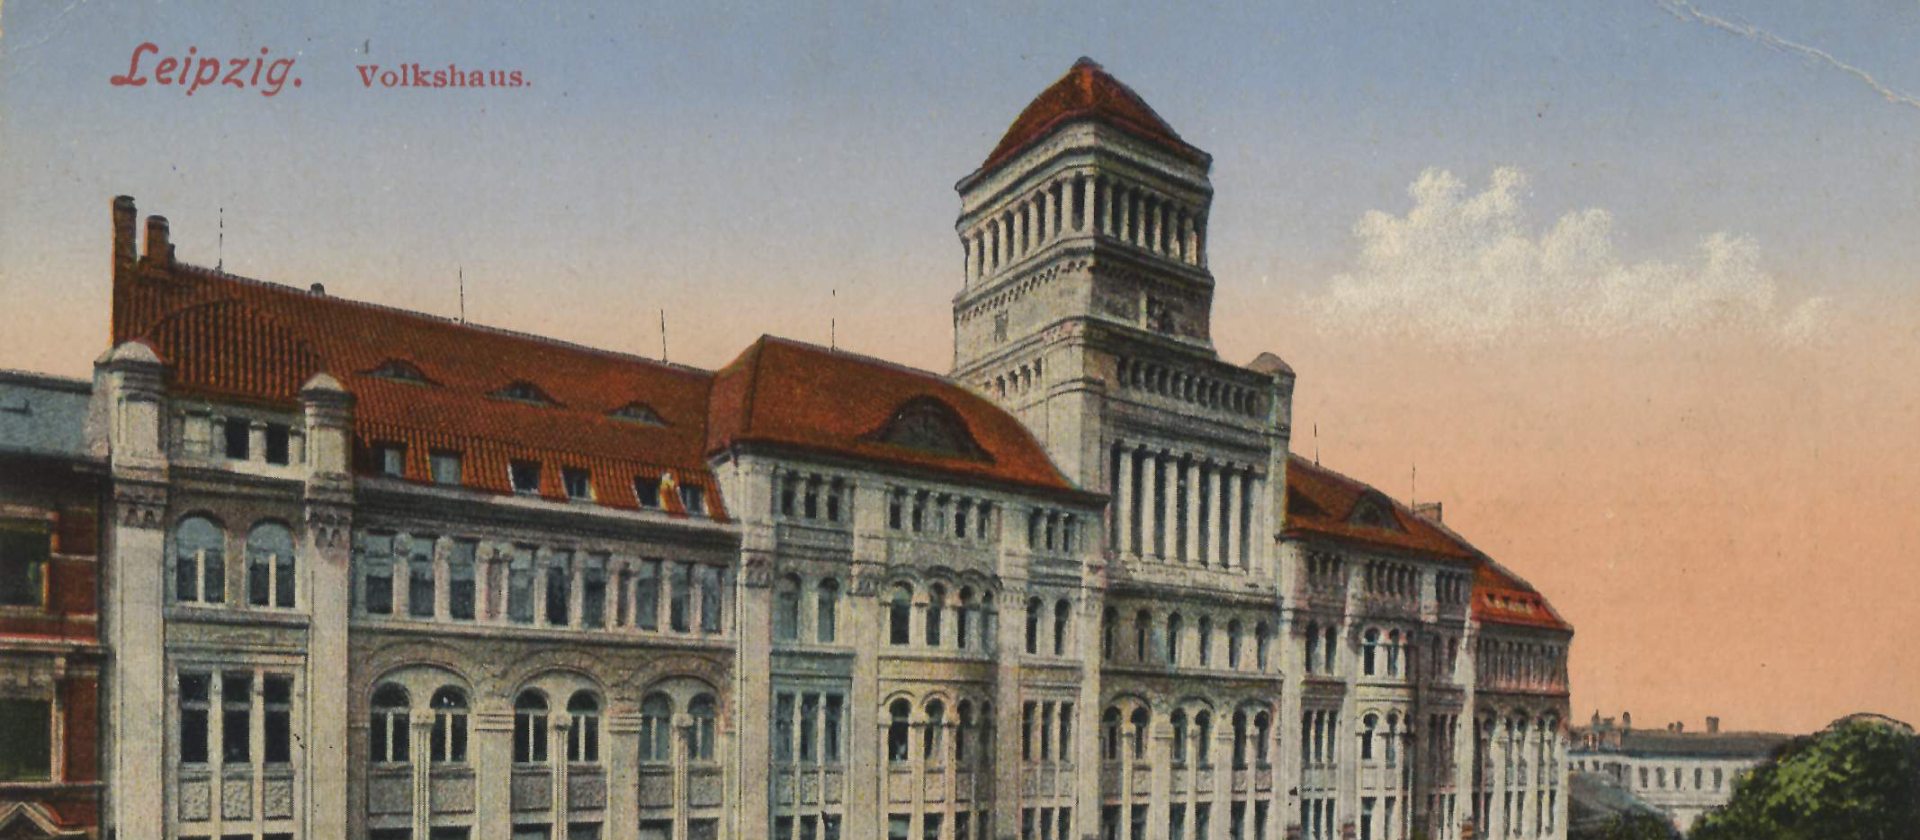 Postkartenzeichnung des imposanten Volkshauses Leipzig.